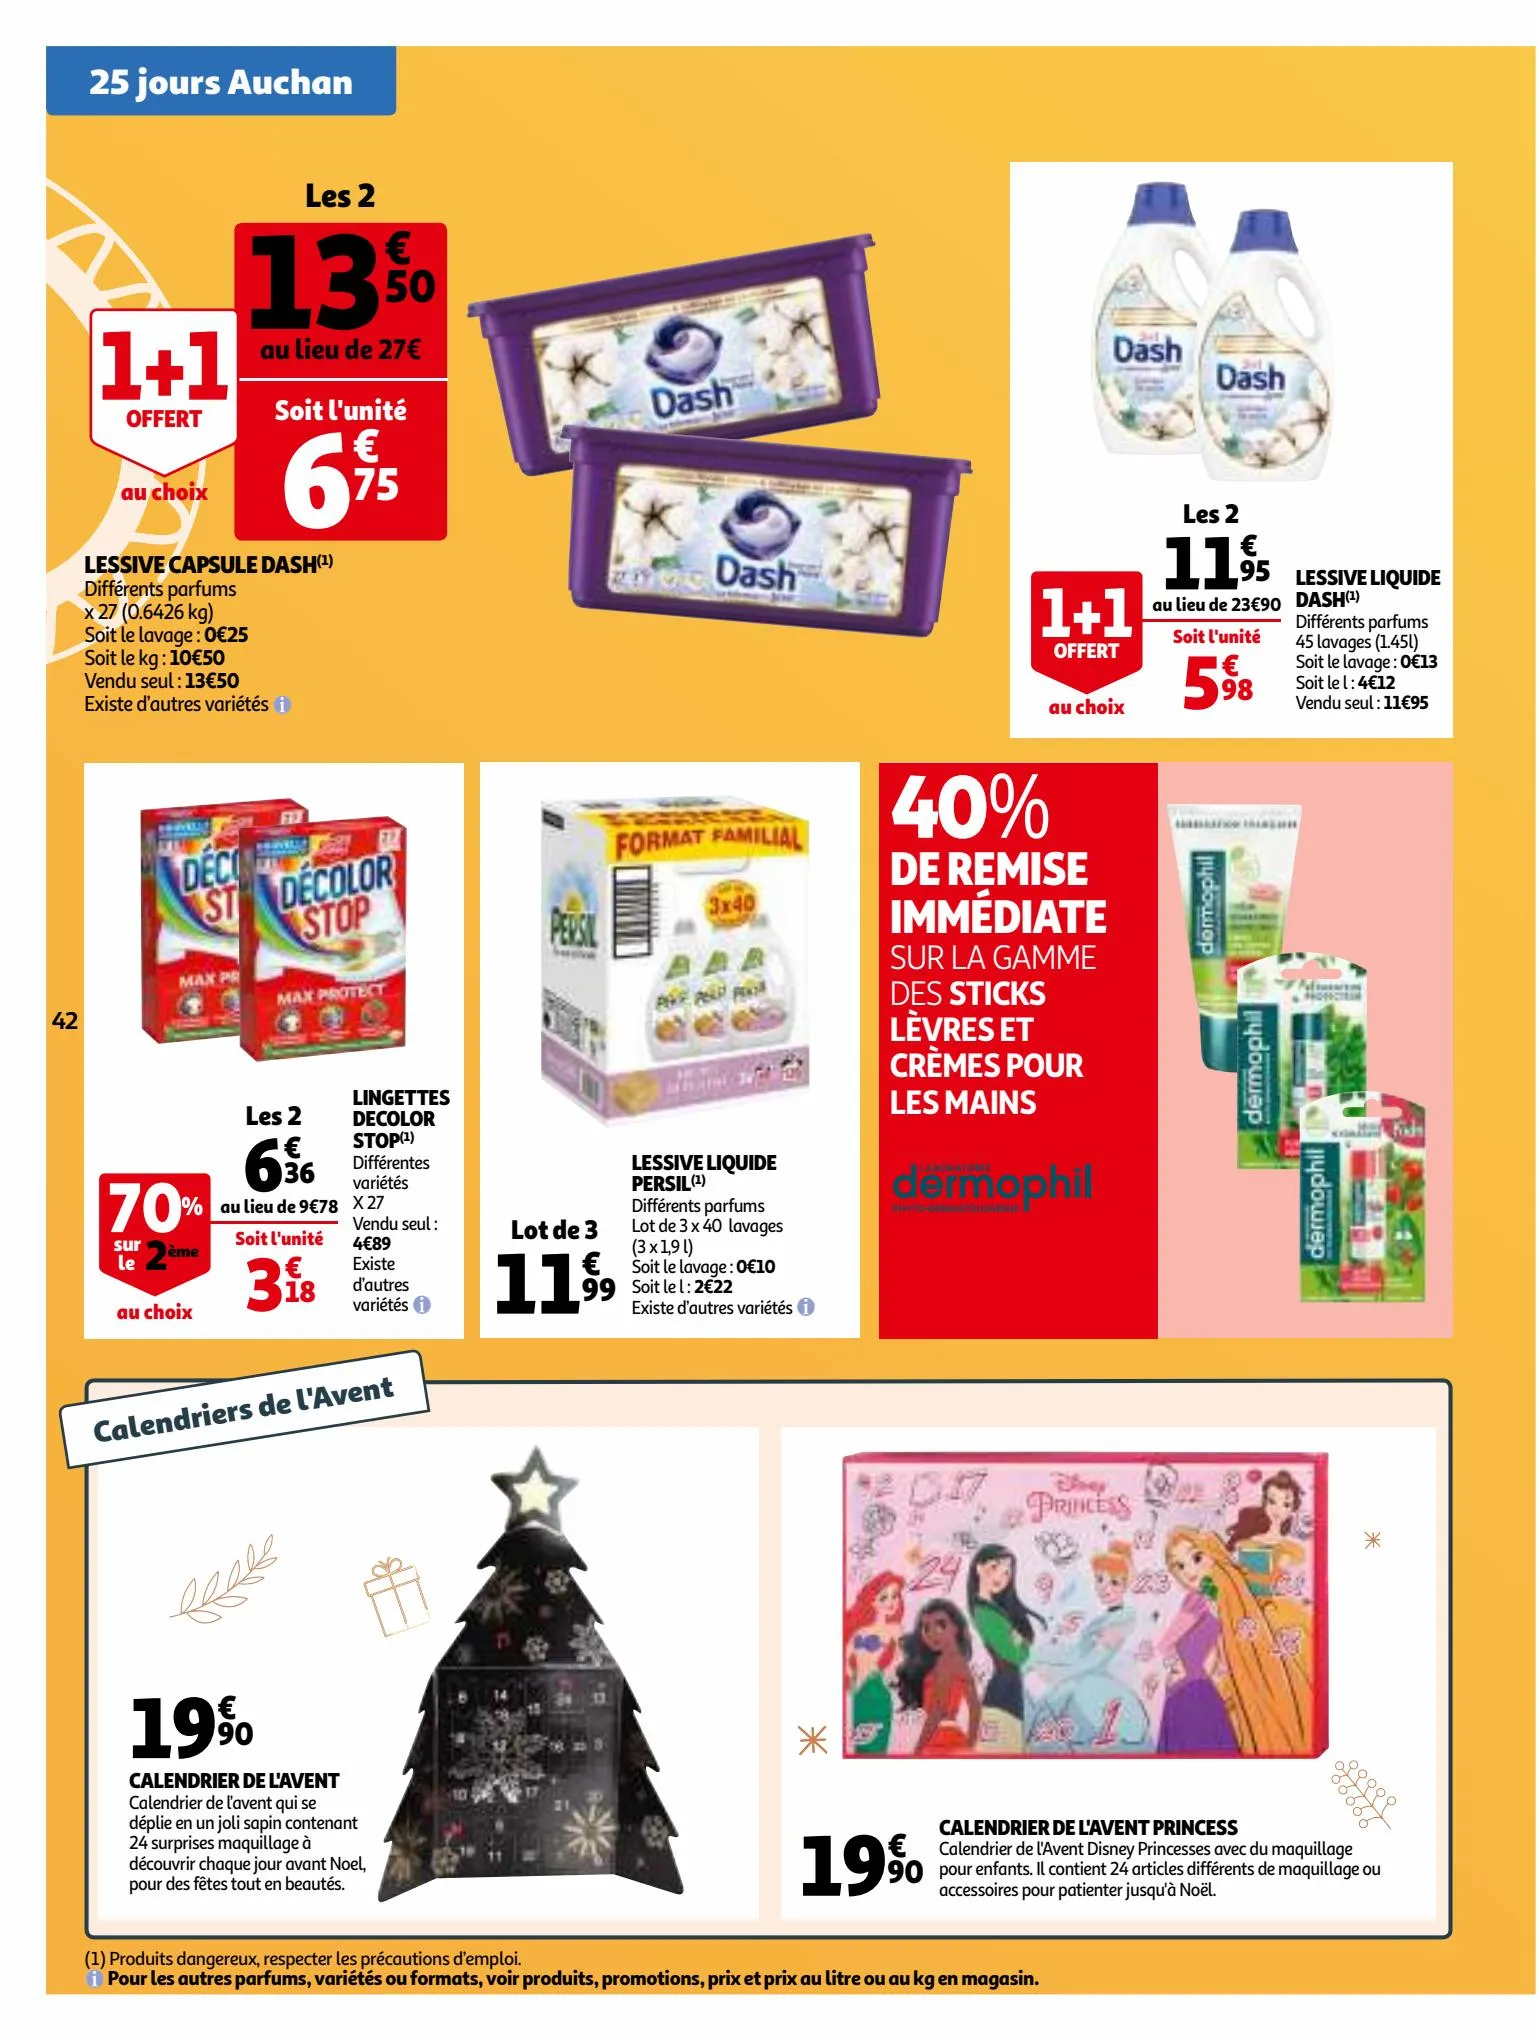 Catalogue 25 Jours Auchan, page 00042